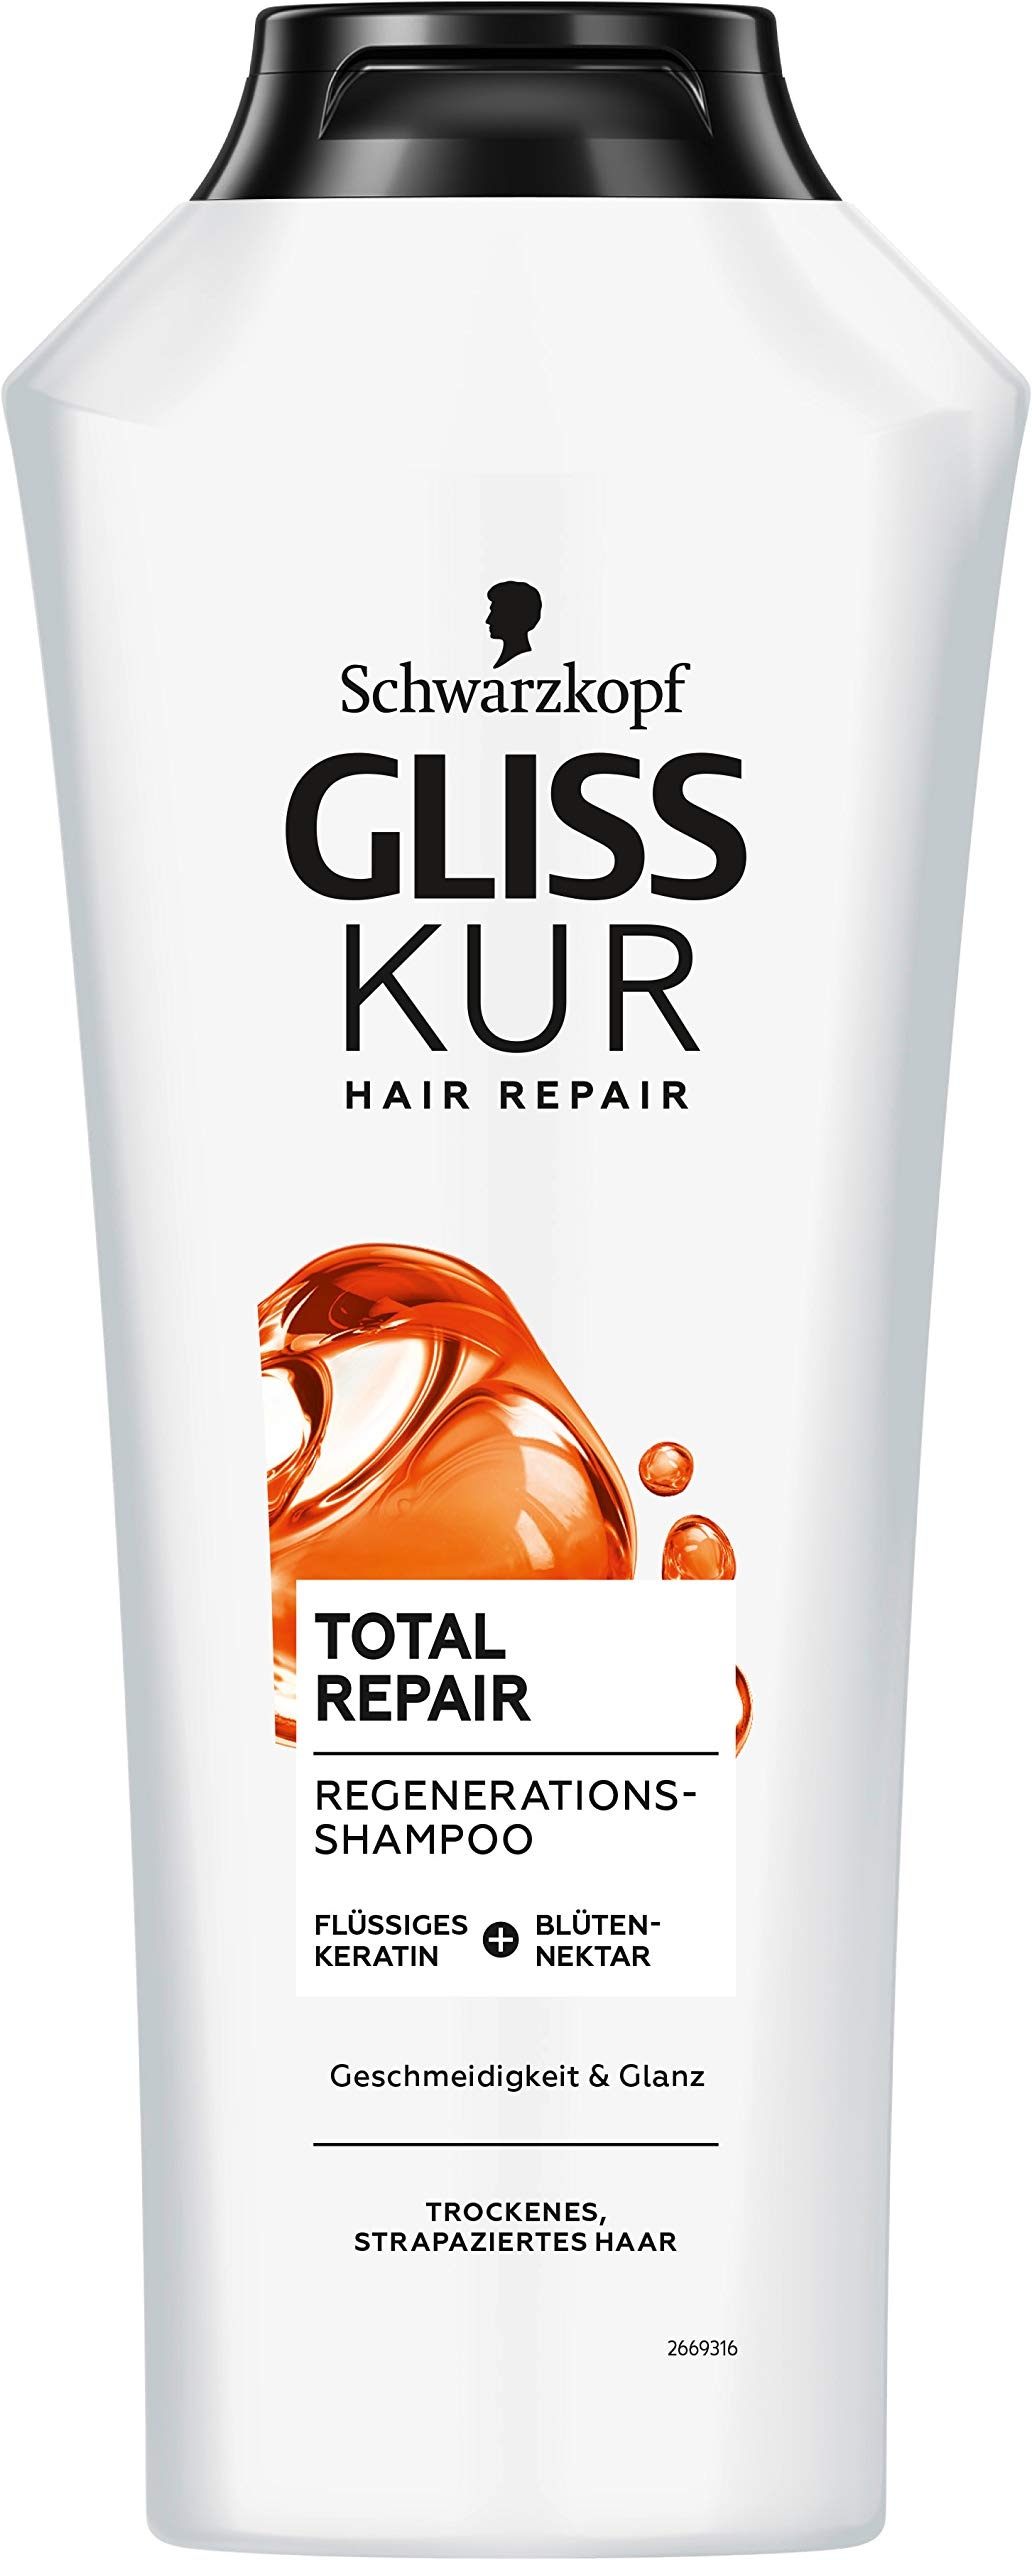 Gliss Kur Shampoo Total Repair (400 ml), Haarshampoo glättet die Haaroberfläche und bietet eine wirksame Reparatur, Pflegeshampoo sorgt für bis zu 85 % weniger Haarbruch